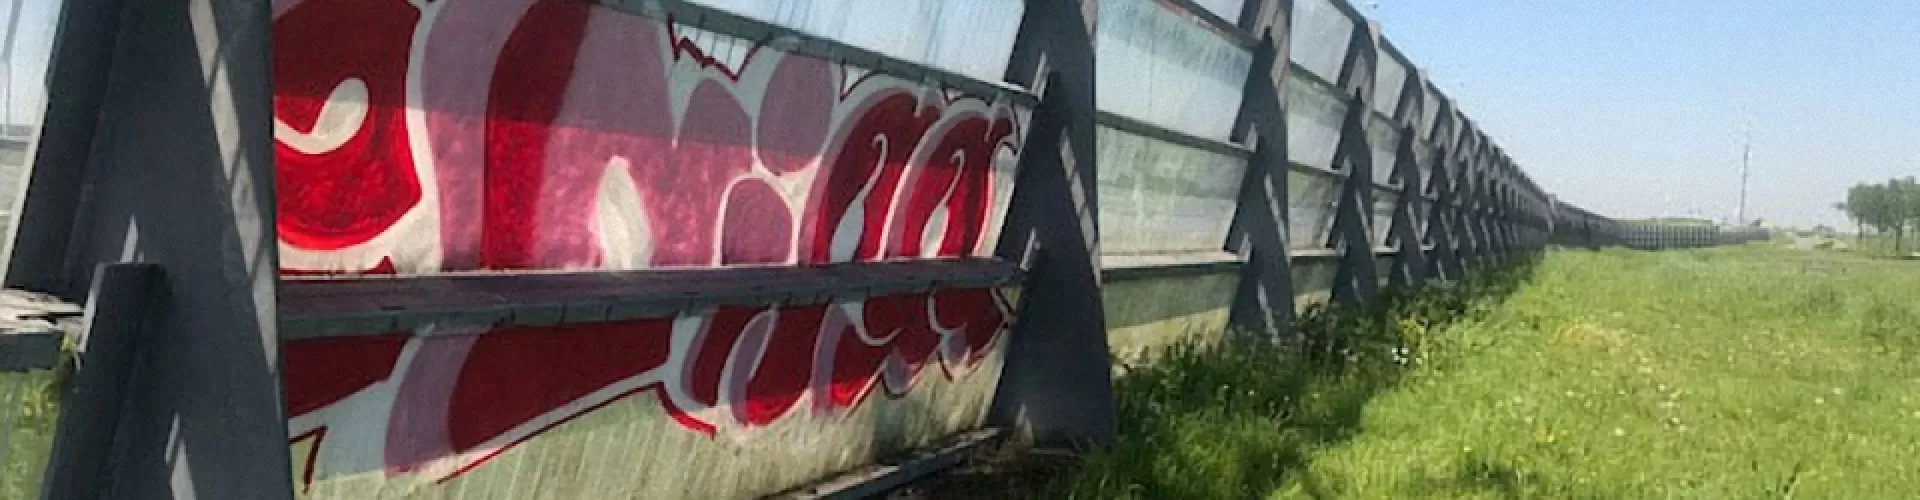 Graffiti verwijderen door specialist.